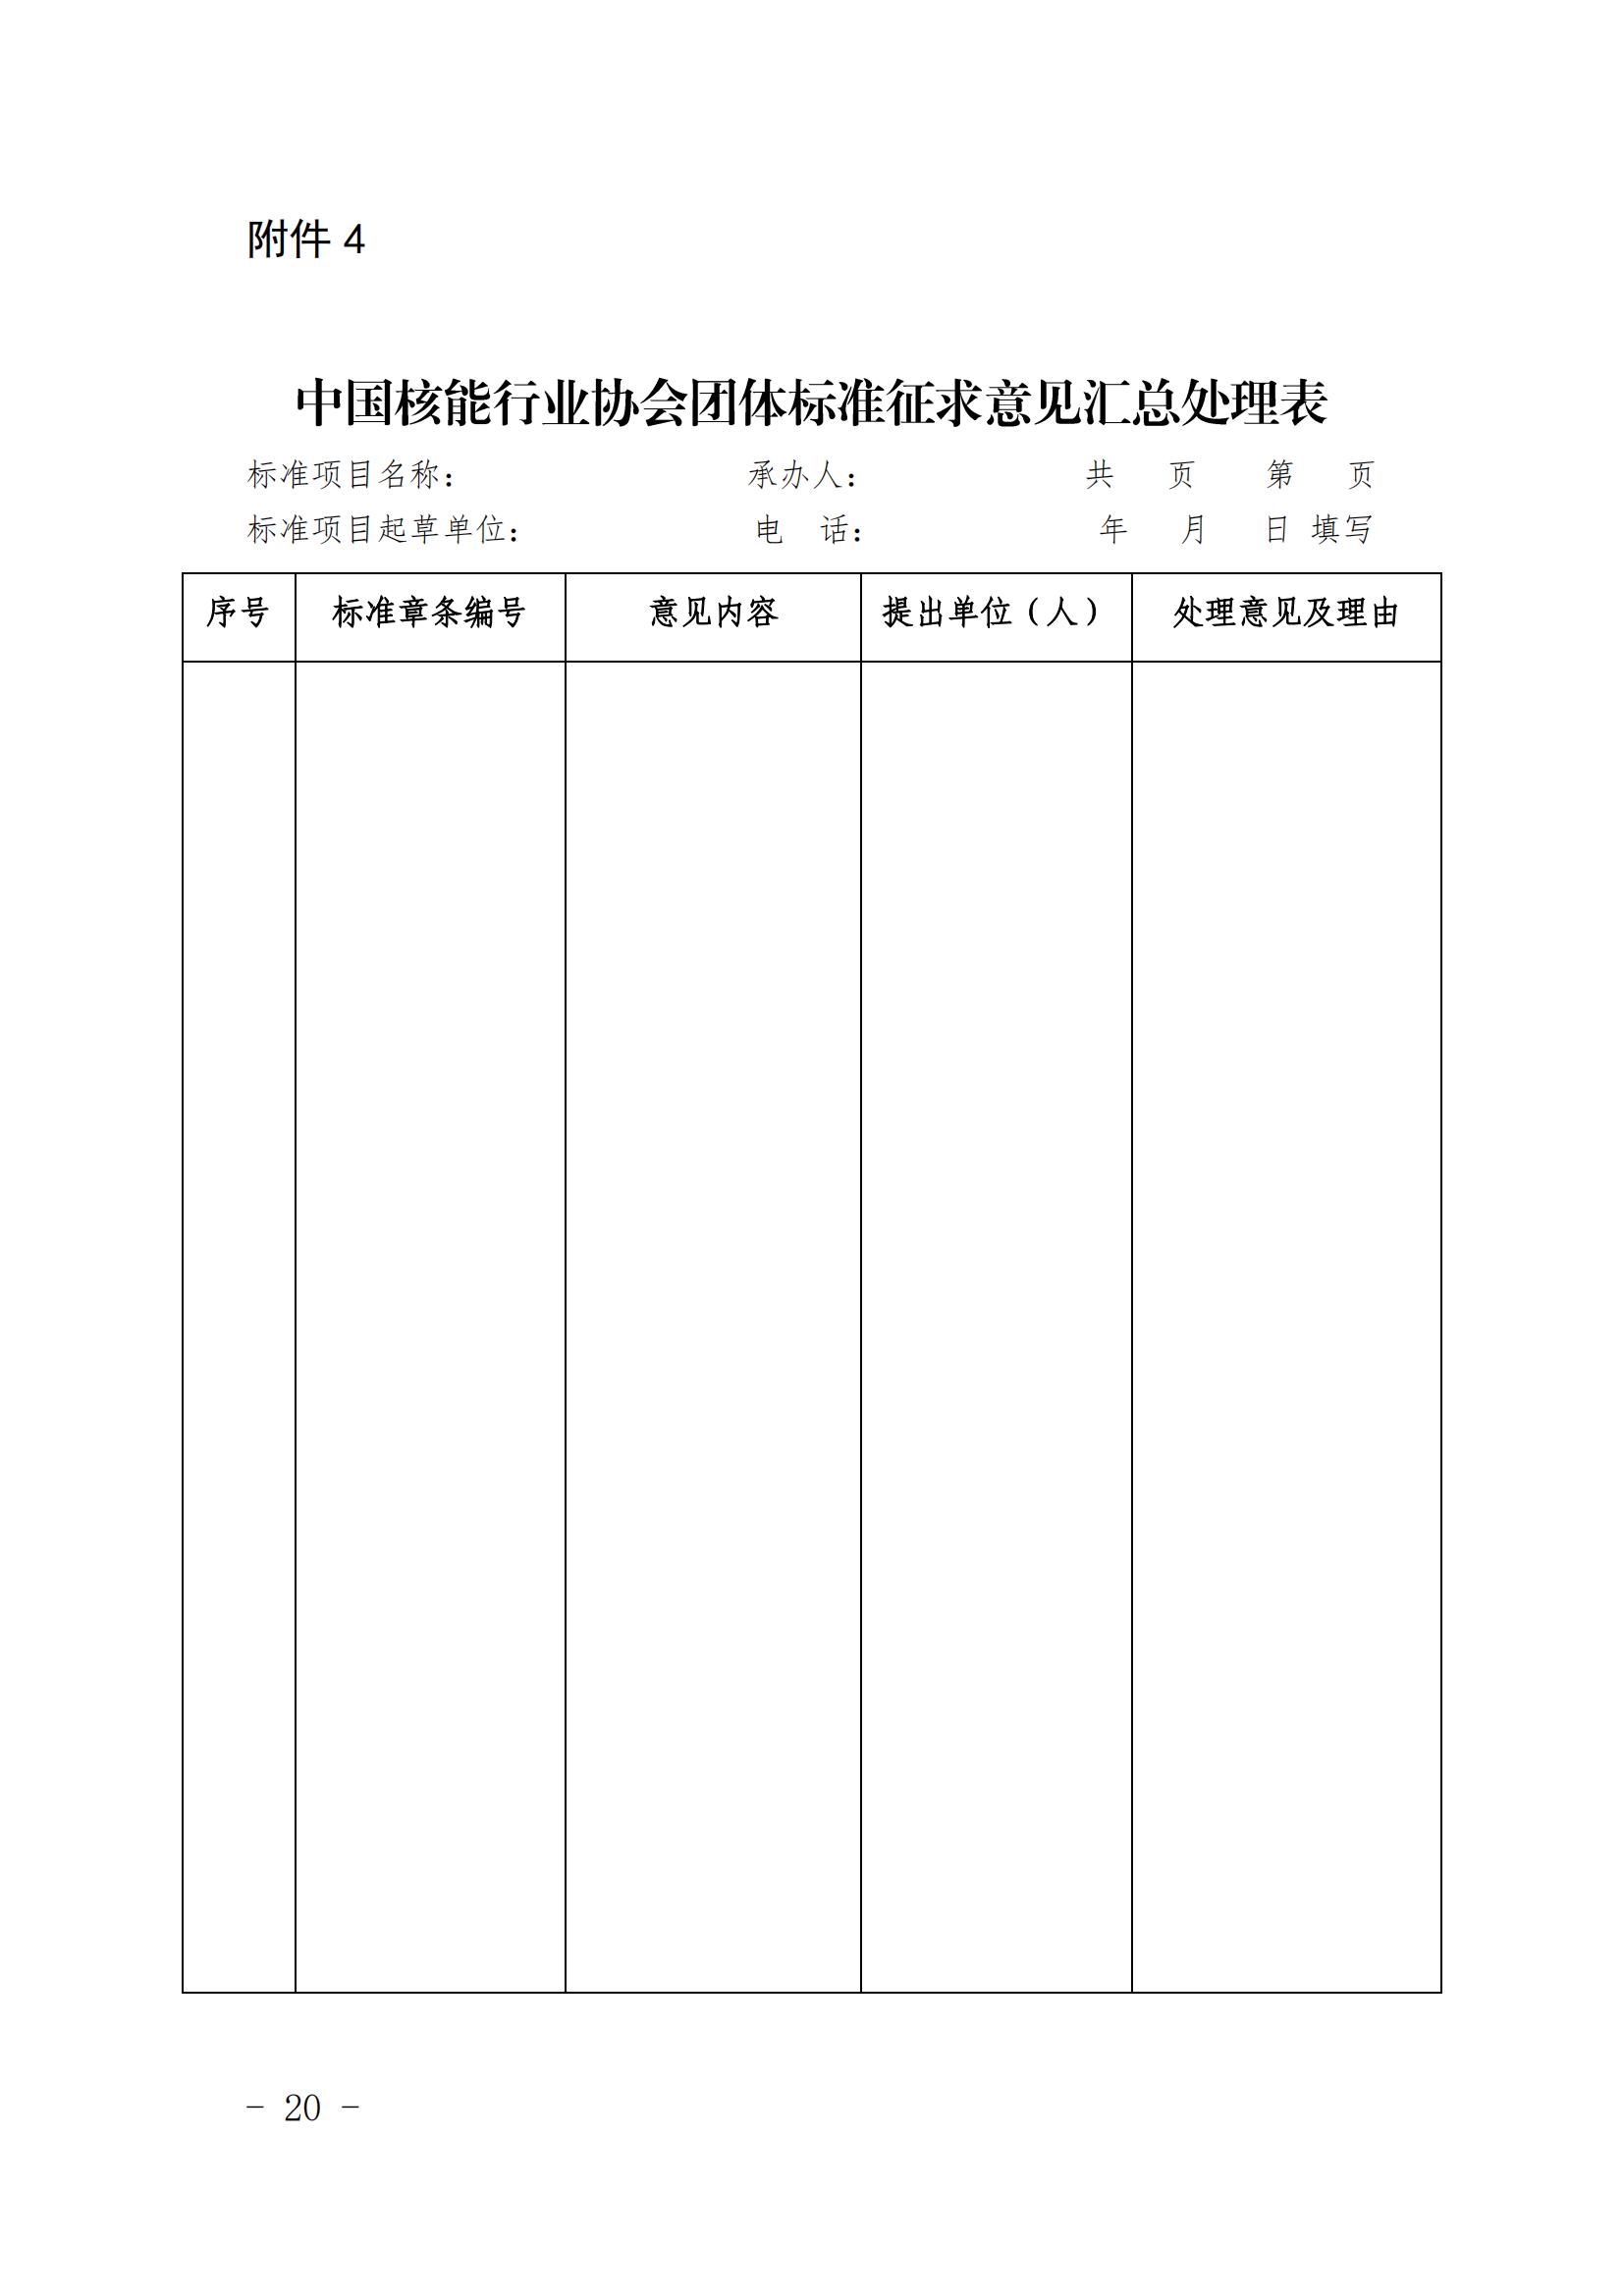 关于印发《中国核能行业协会团体标准管理办法（试行）》和《中国核能行业协会团体标准制修订细则（试行）》的通知_19.jpg